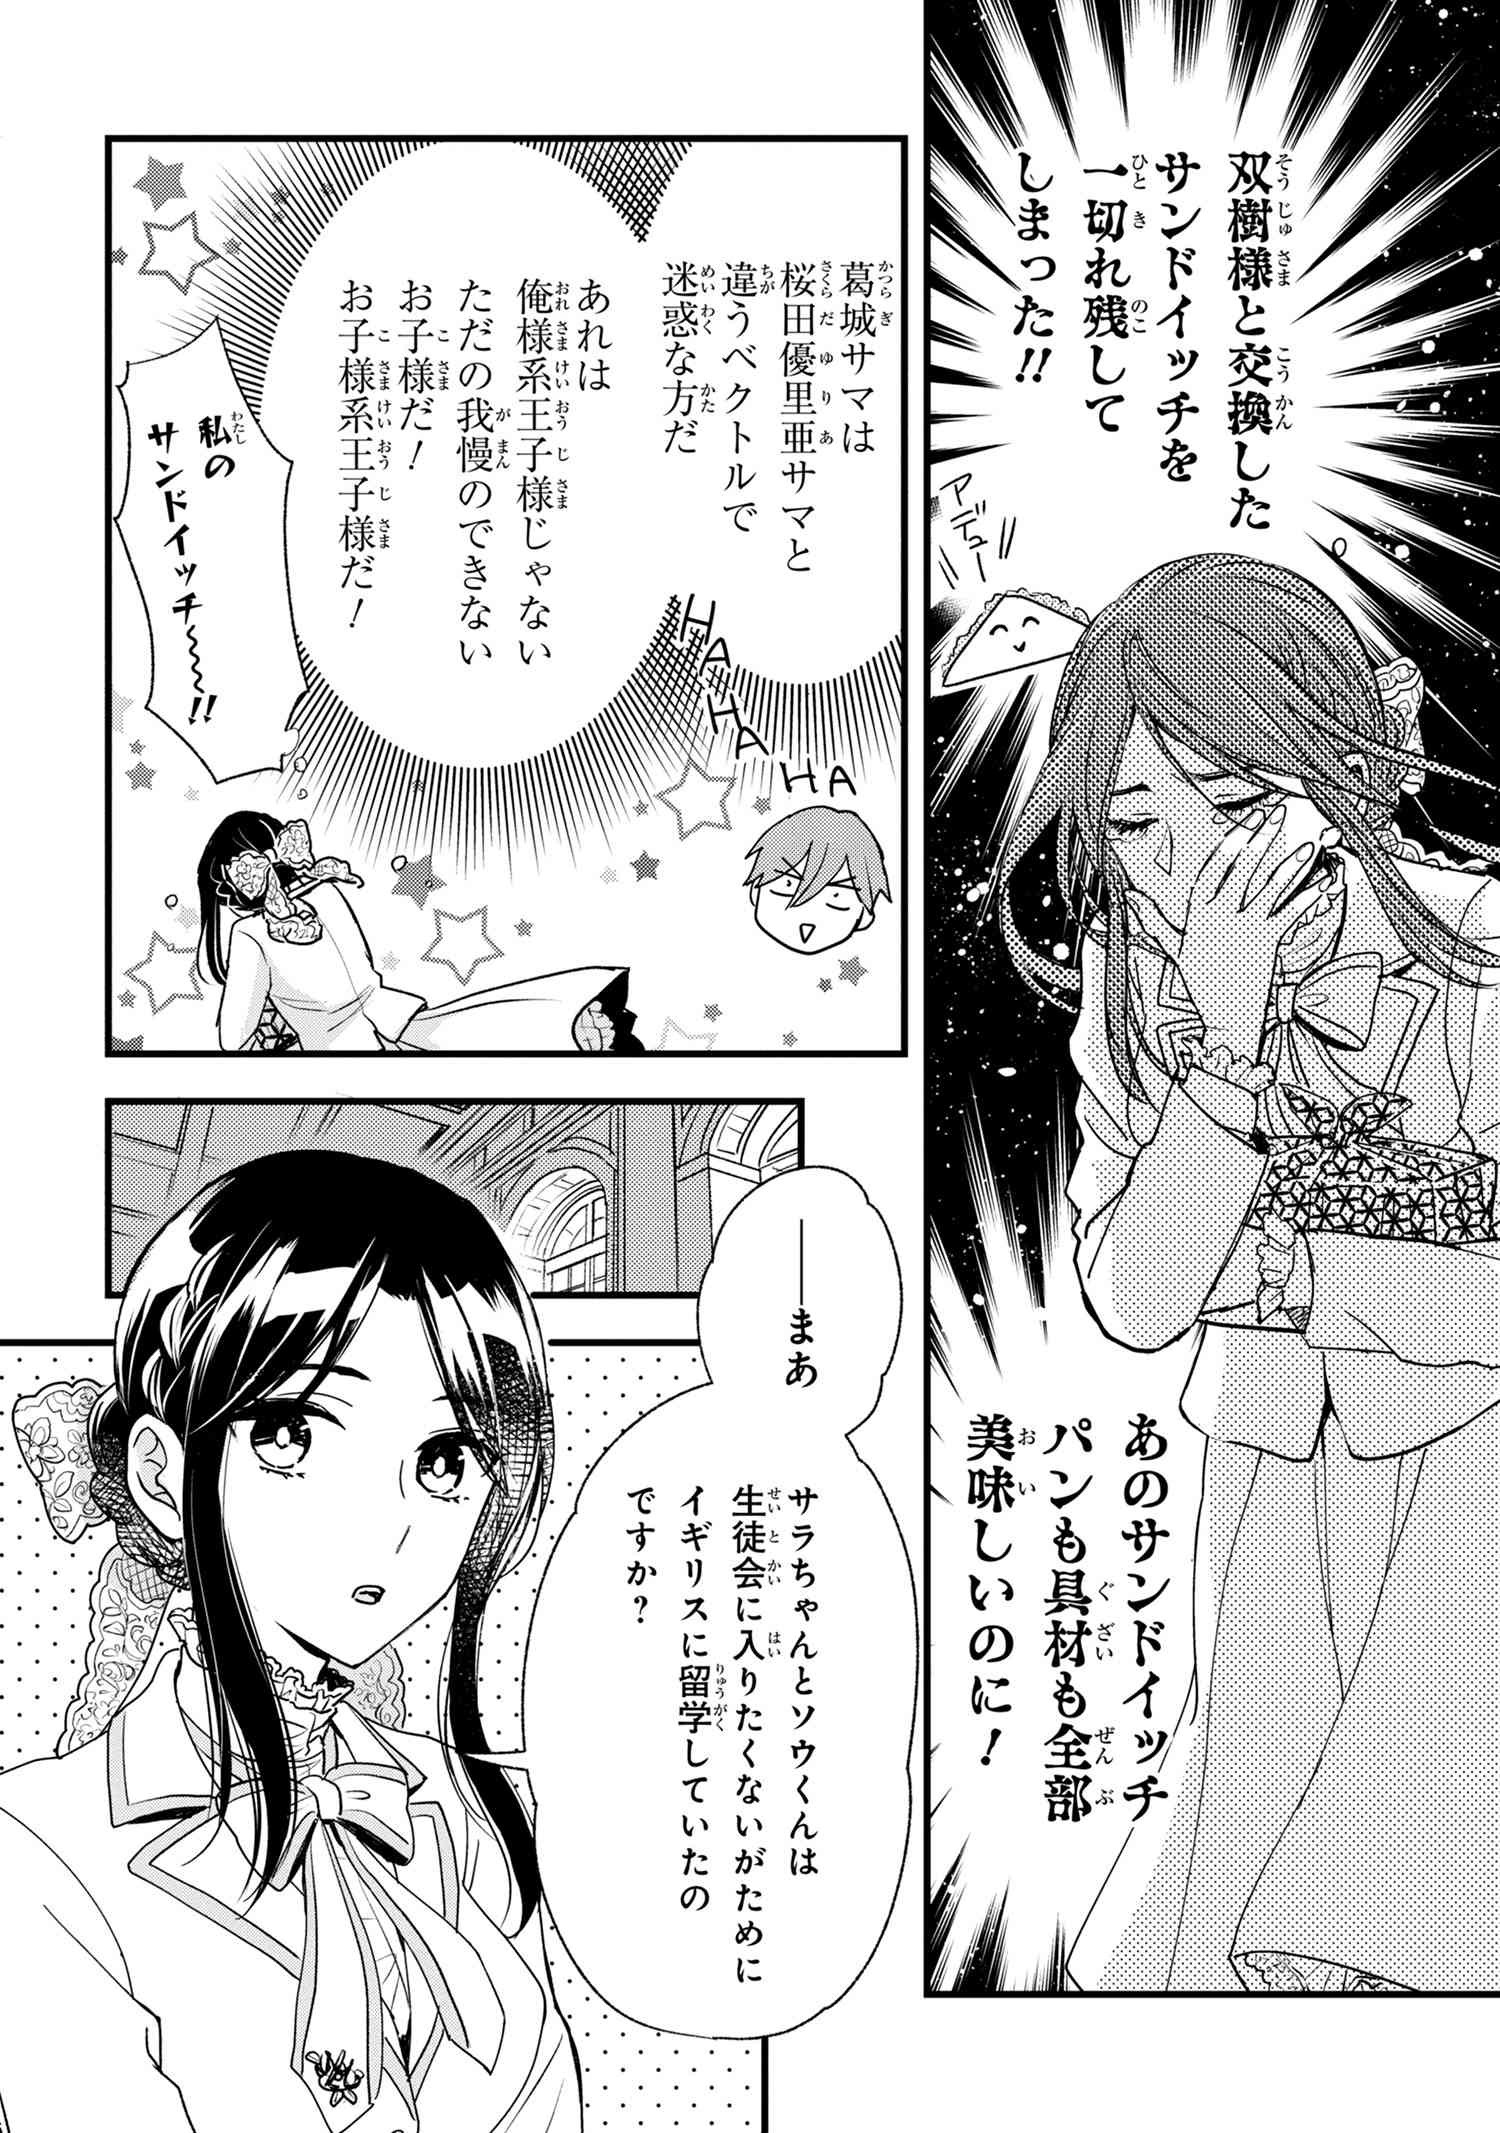 Reiko no Fuugi Akuyaku Reijou to Yobarete imasu ga, tada no Binbou Musume desu - Chapter 12-2 - Page 2